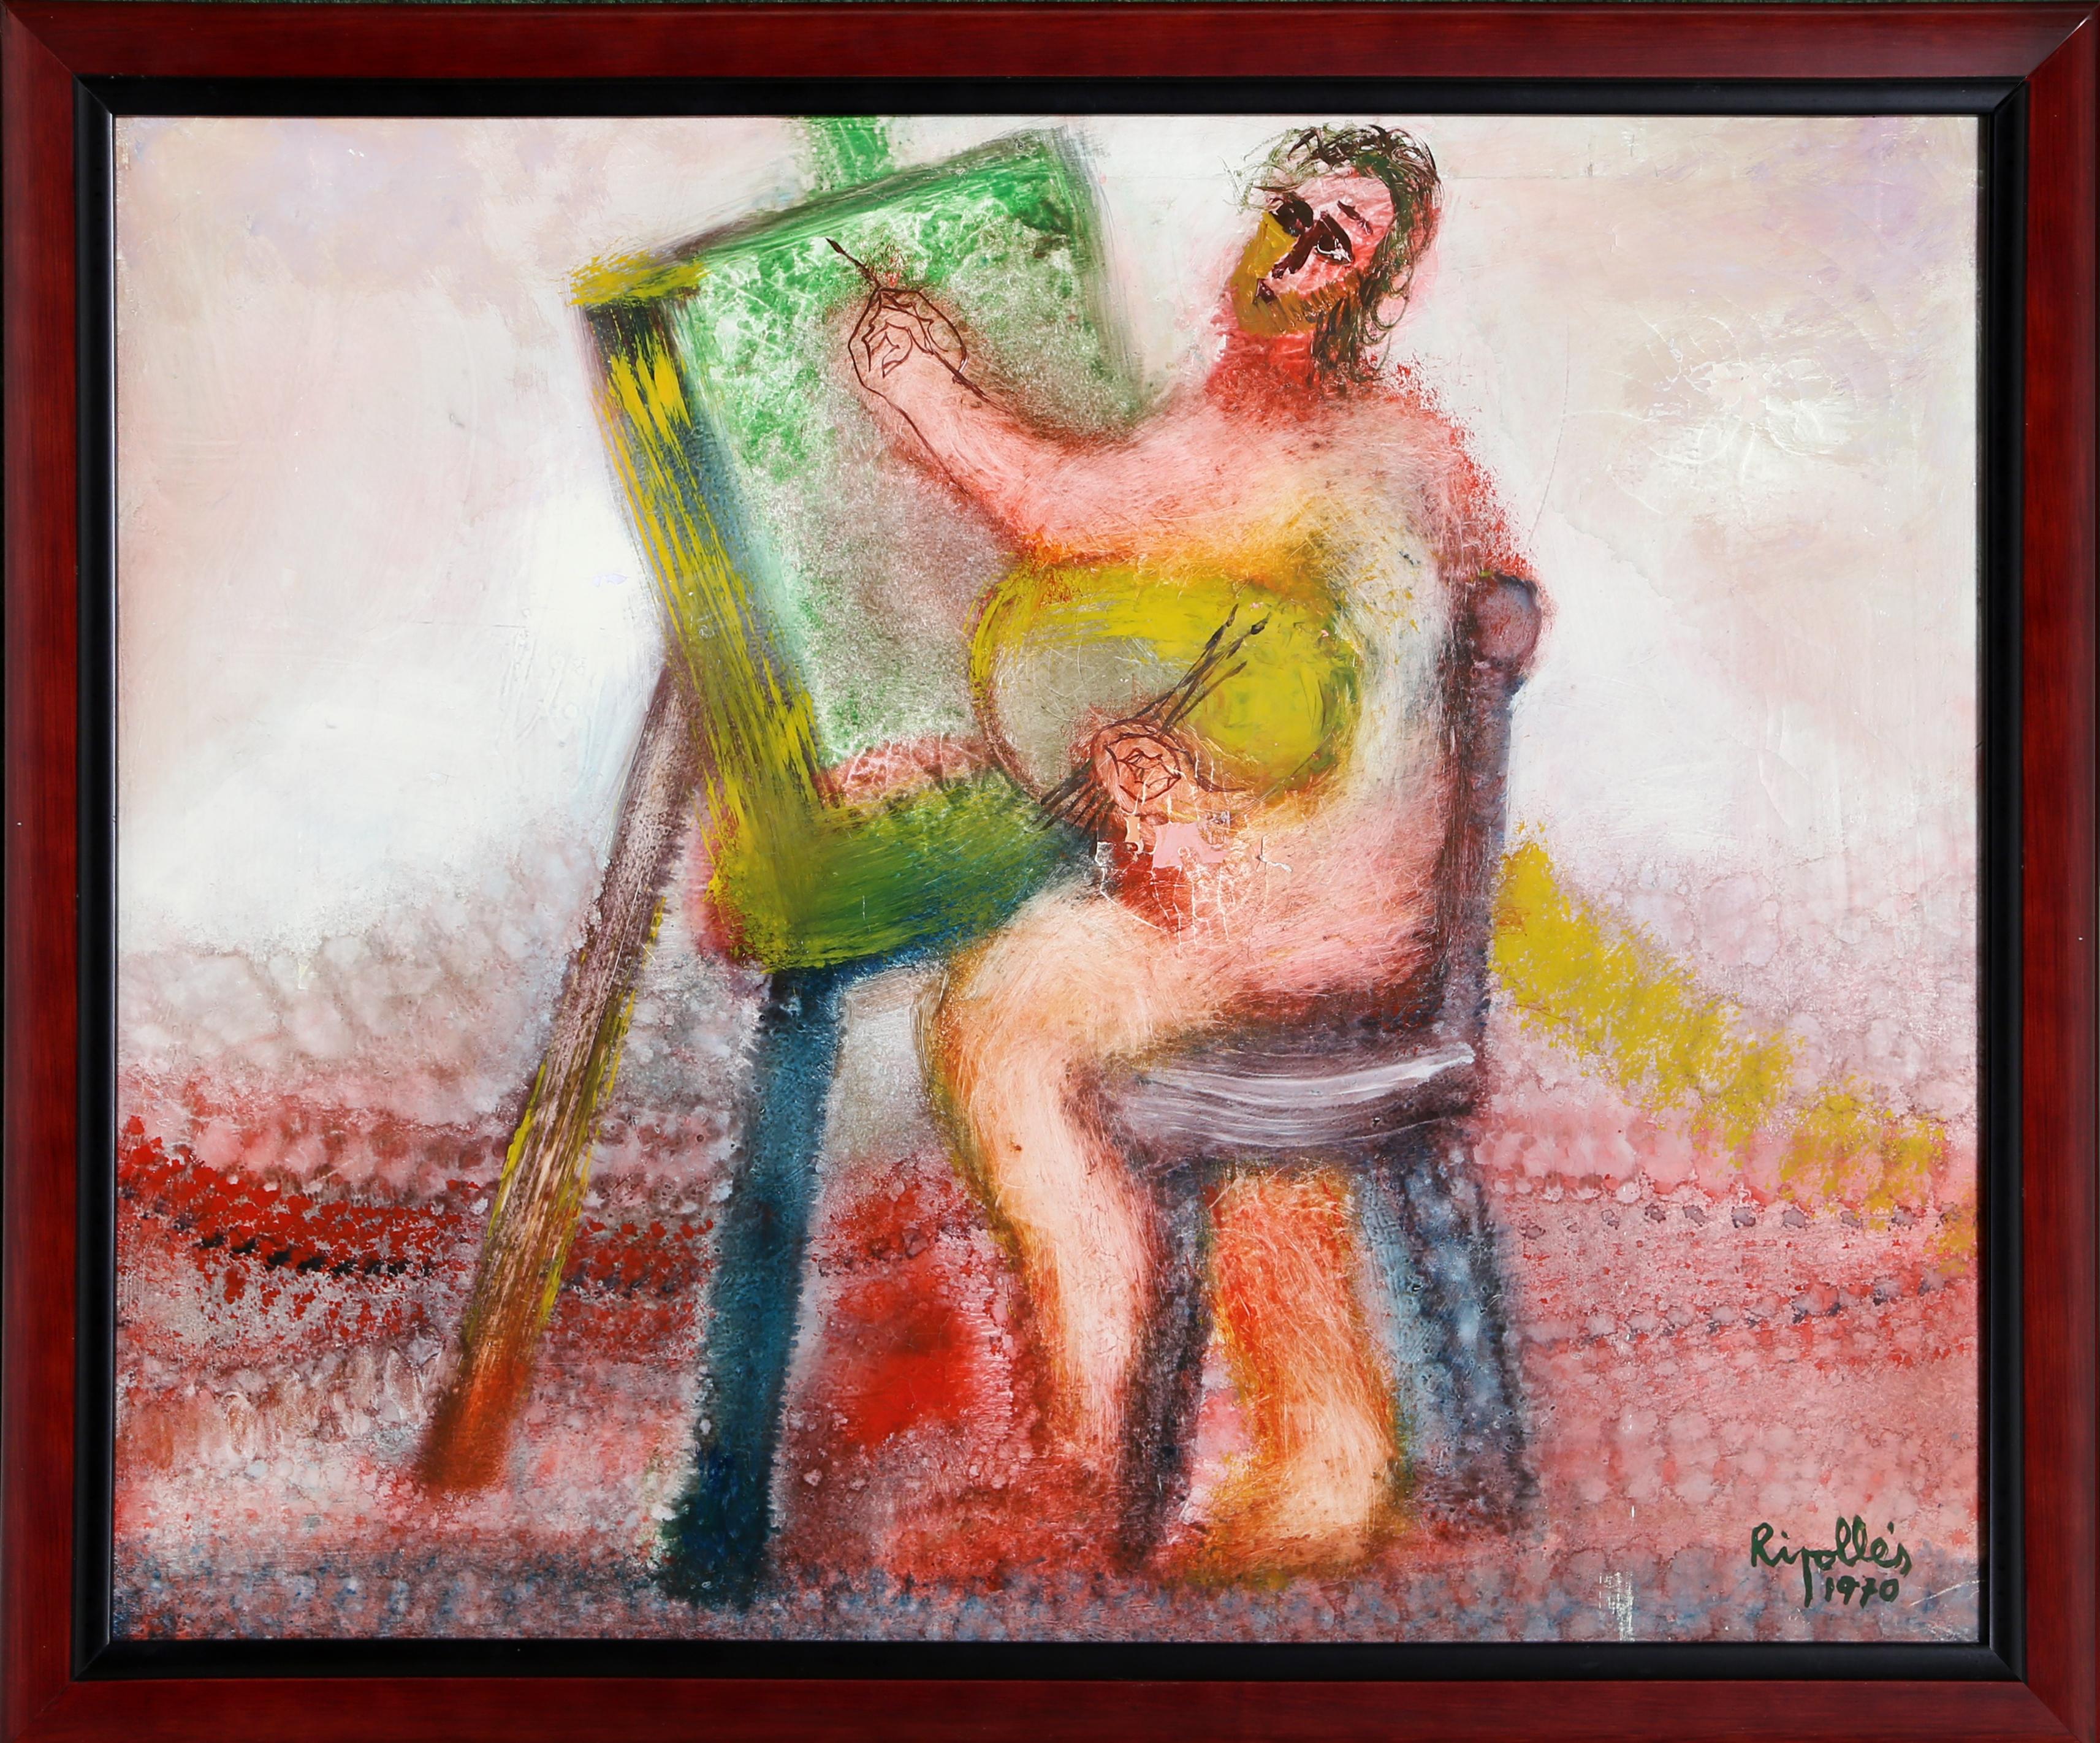 Artiste : Juan Garcia Ripolles, espagnol (1932 - )
Titre : The Artist III
Année : 1970
Moyen : Huile sur toile, signé à gauche.
Taille : 19,5 in. x 24 in. (49,53 cm x 60,96 cm)
Taille du cadre : 22 x 27 pouces 